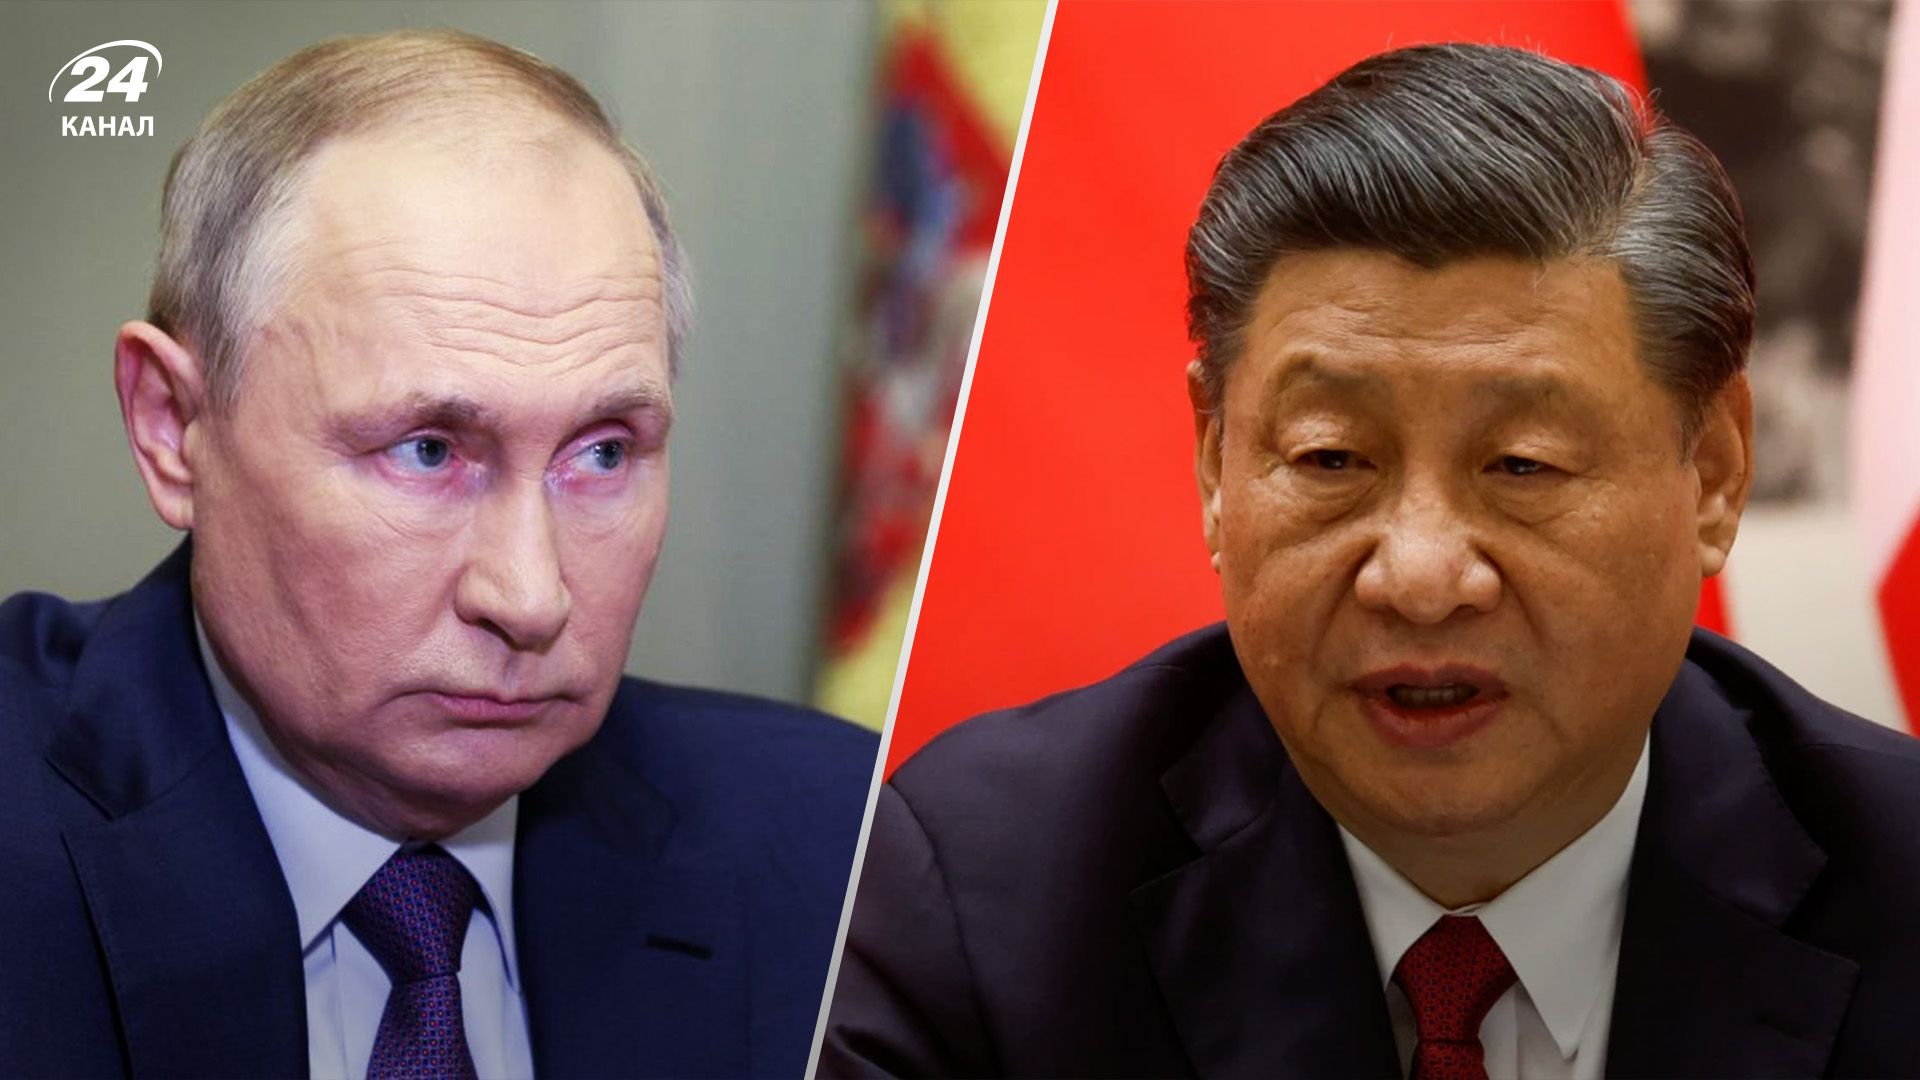 Захід прагне розбити альянс Росії та Китаю